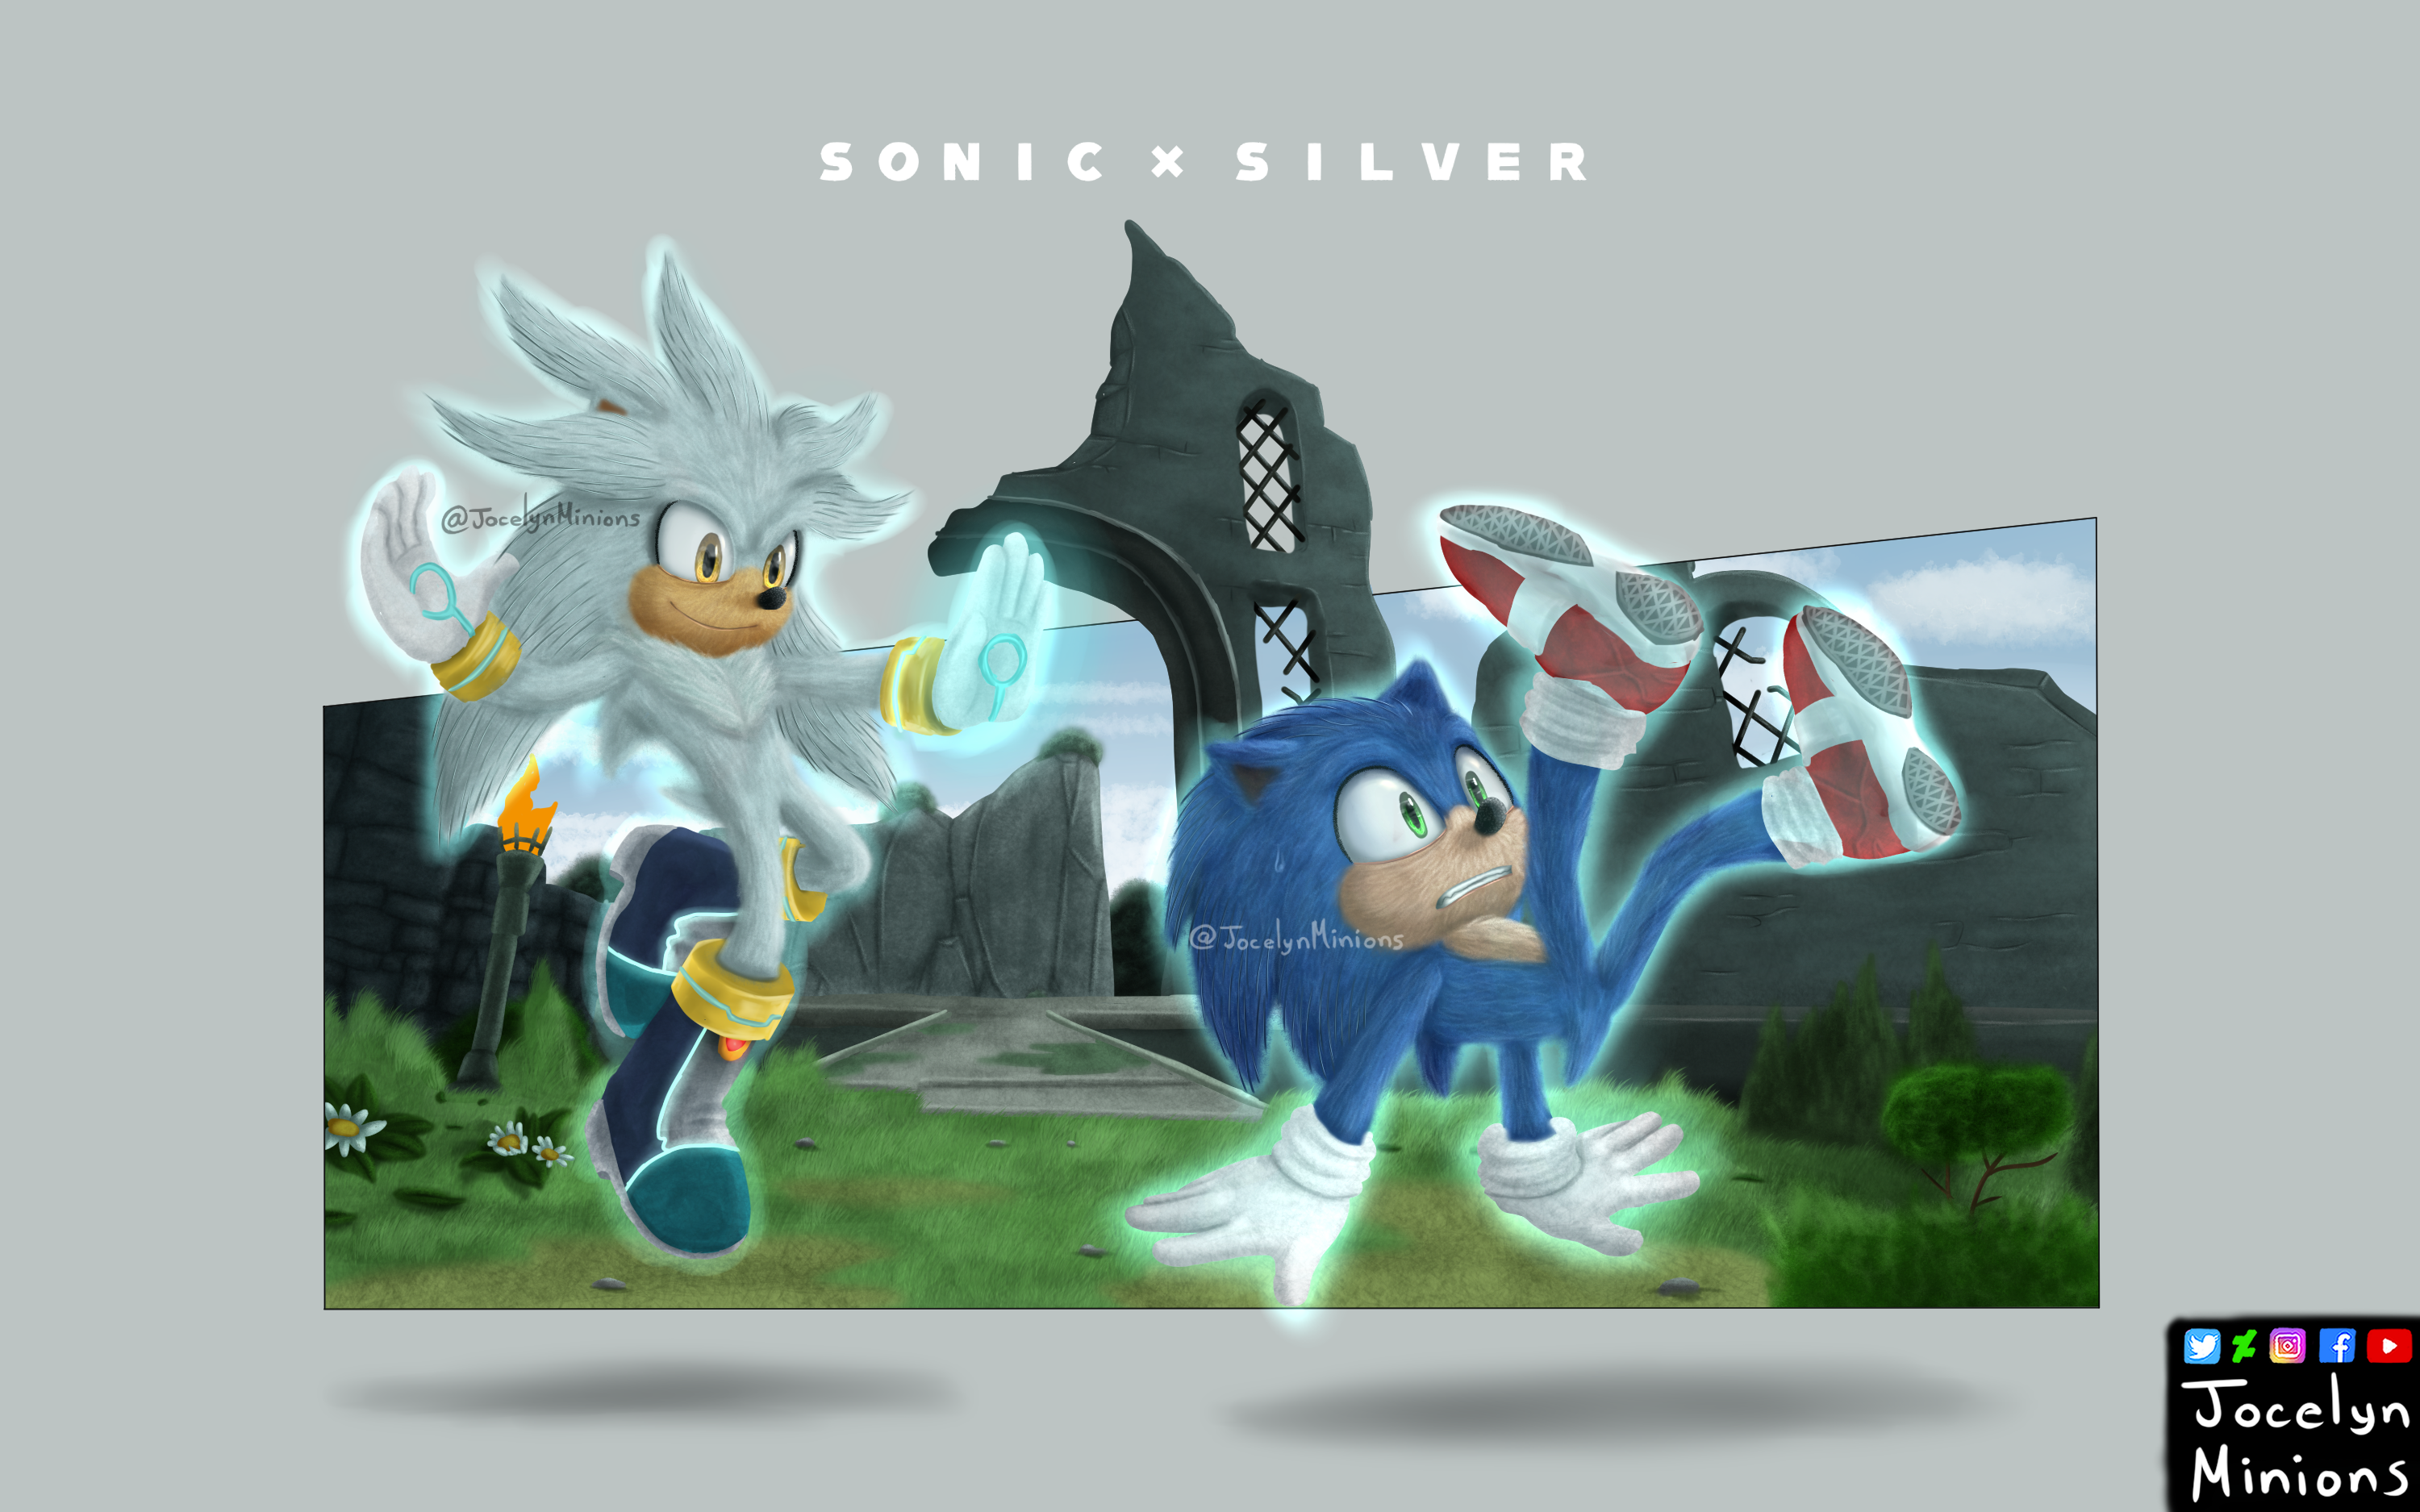 Sonic x Shadow (Movie Style Redraw) by Jame5rheneaZ on deviantart